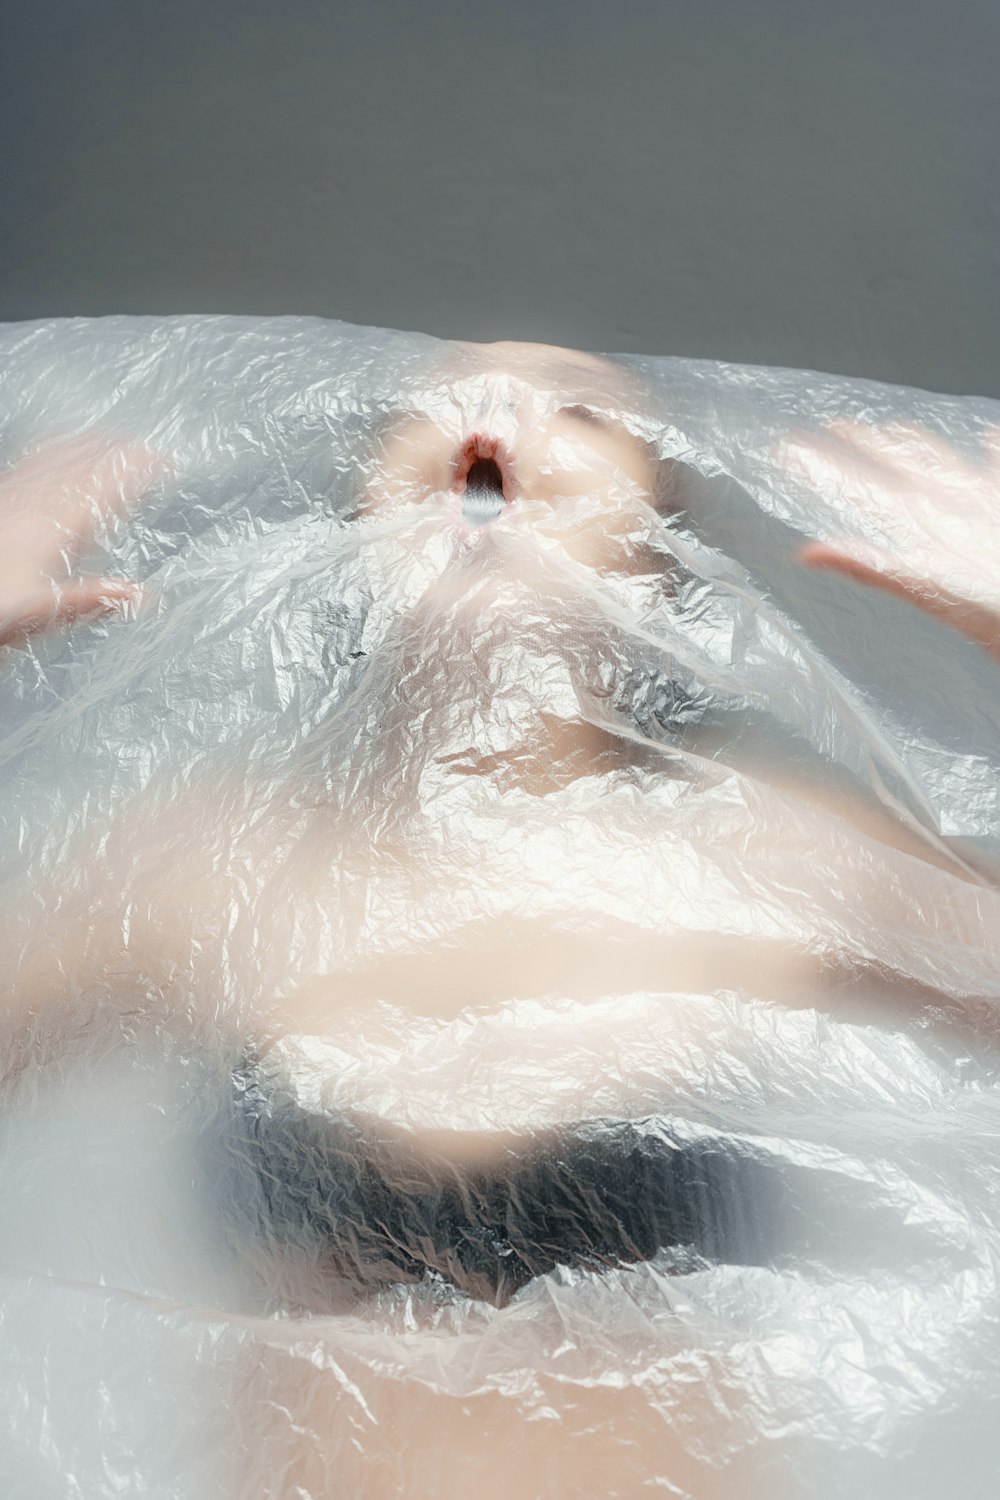 ビニールで覆われた浴槽に横たわる女性